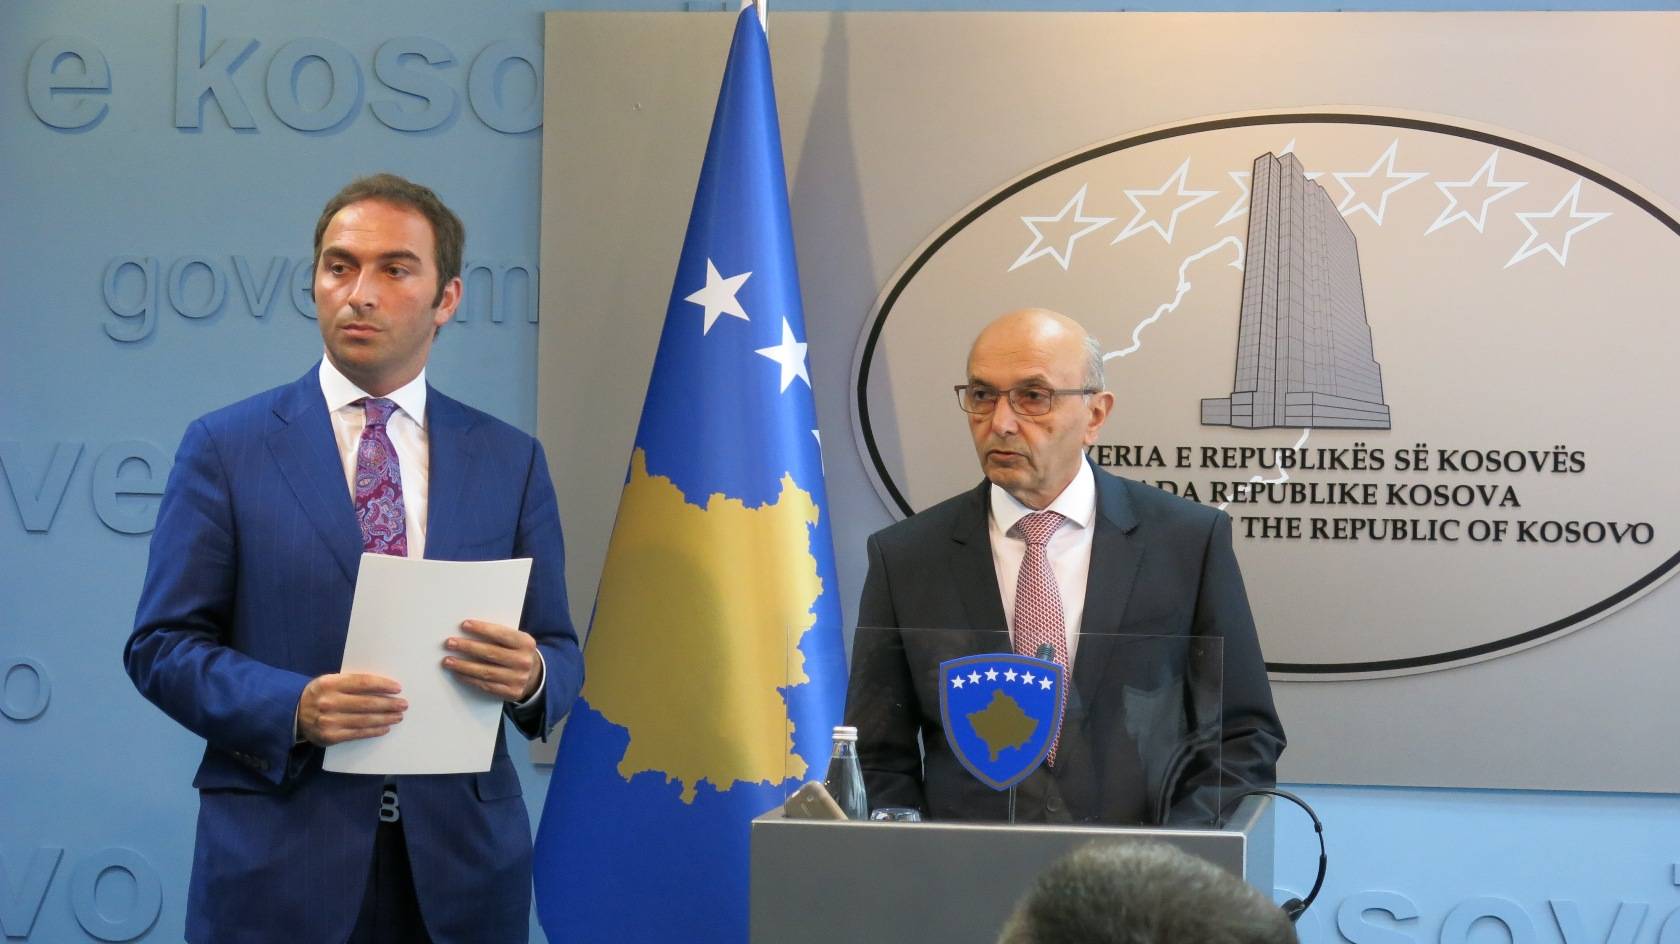 Pritet shpejt të finalizohet procesi për ndërtimin e Kosovës së Re